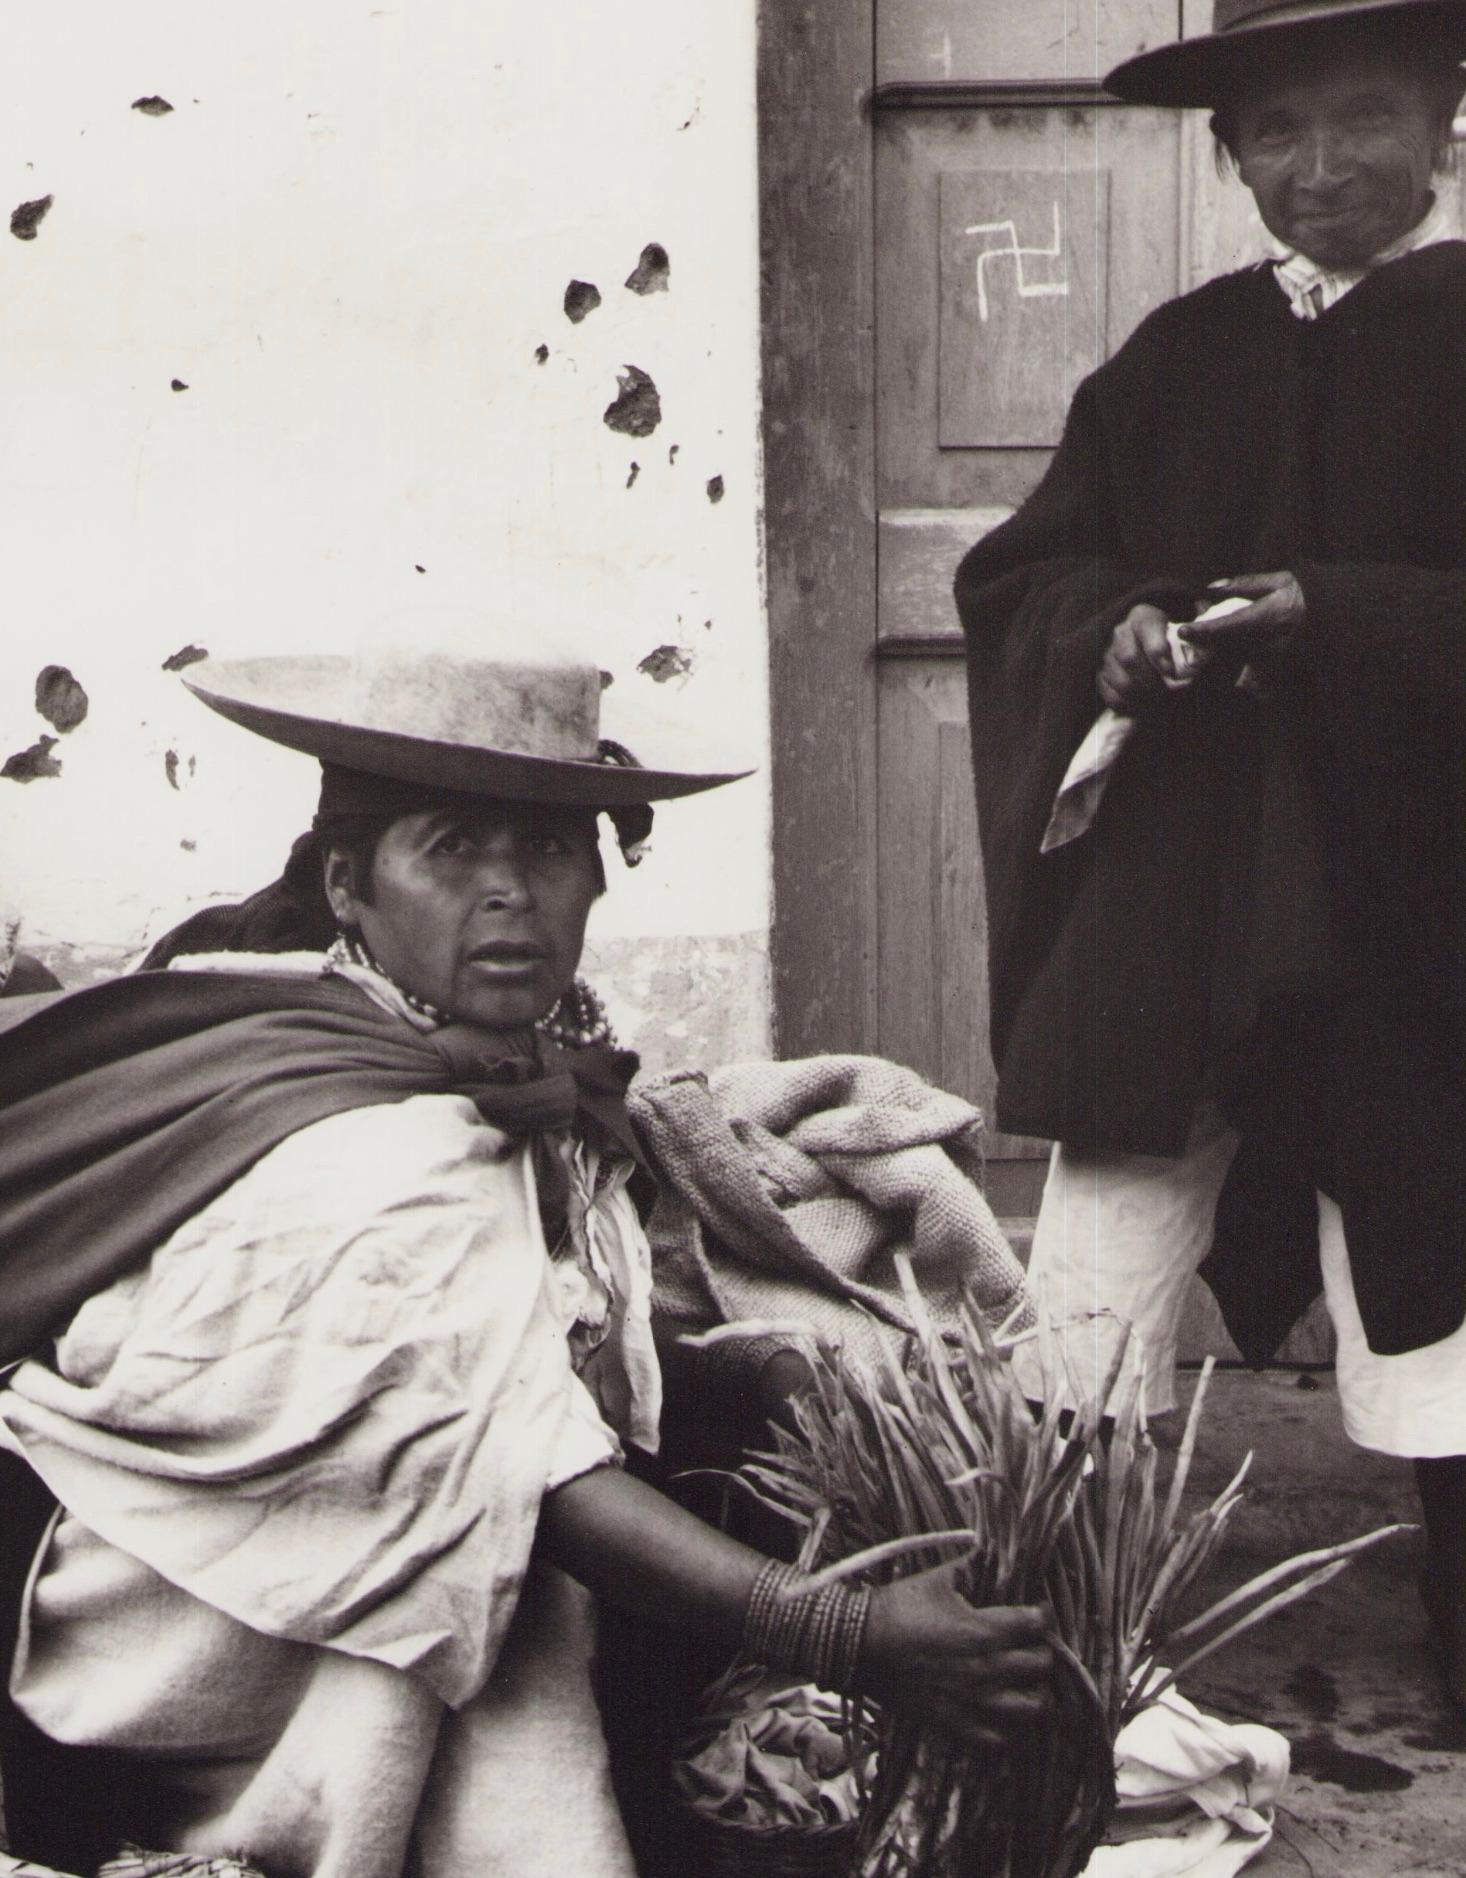 Équateur, vendeur, marché, photographie en noir et blanc, années 1960, 23,4 x 16,8 cm - Photograph de Hanna Seidel